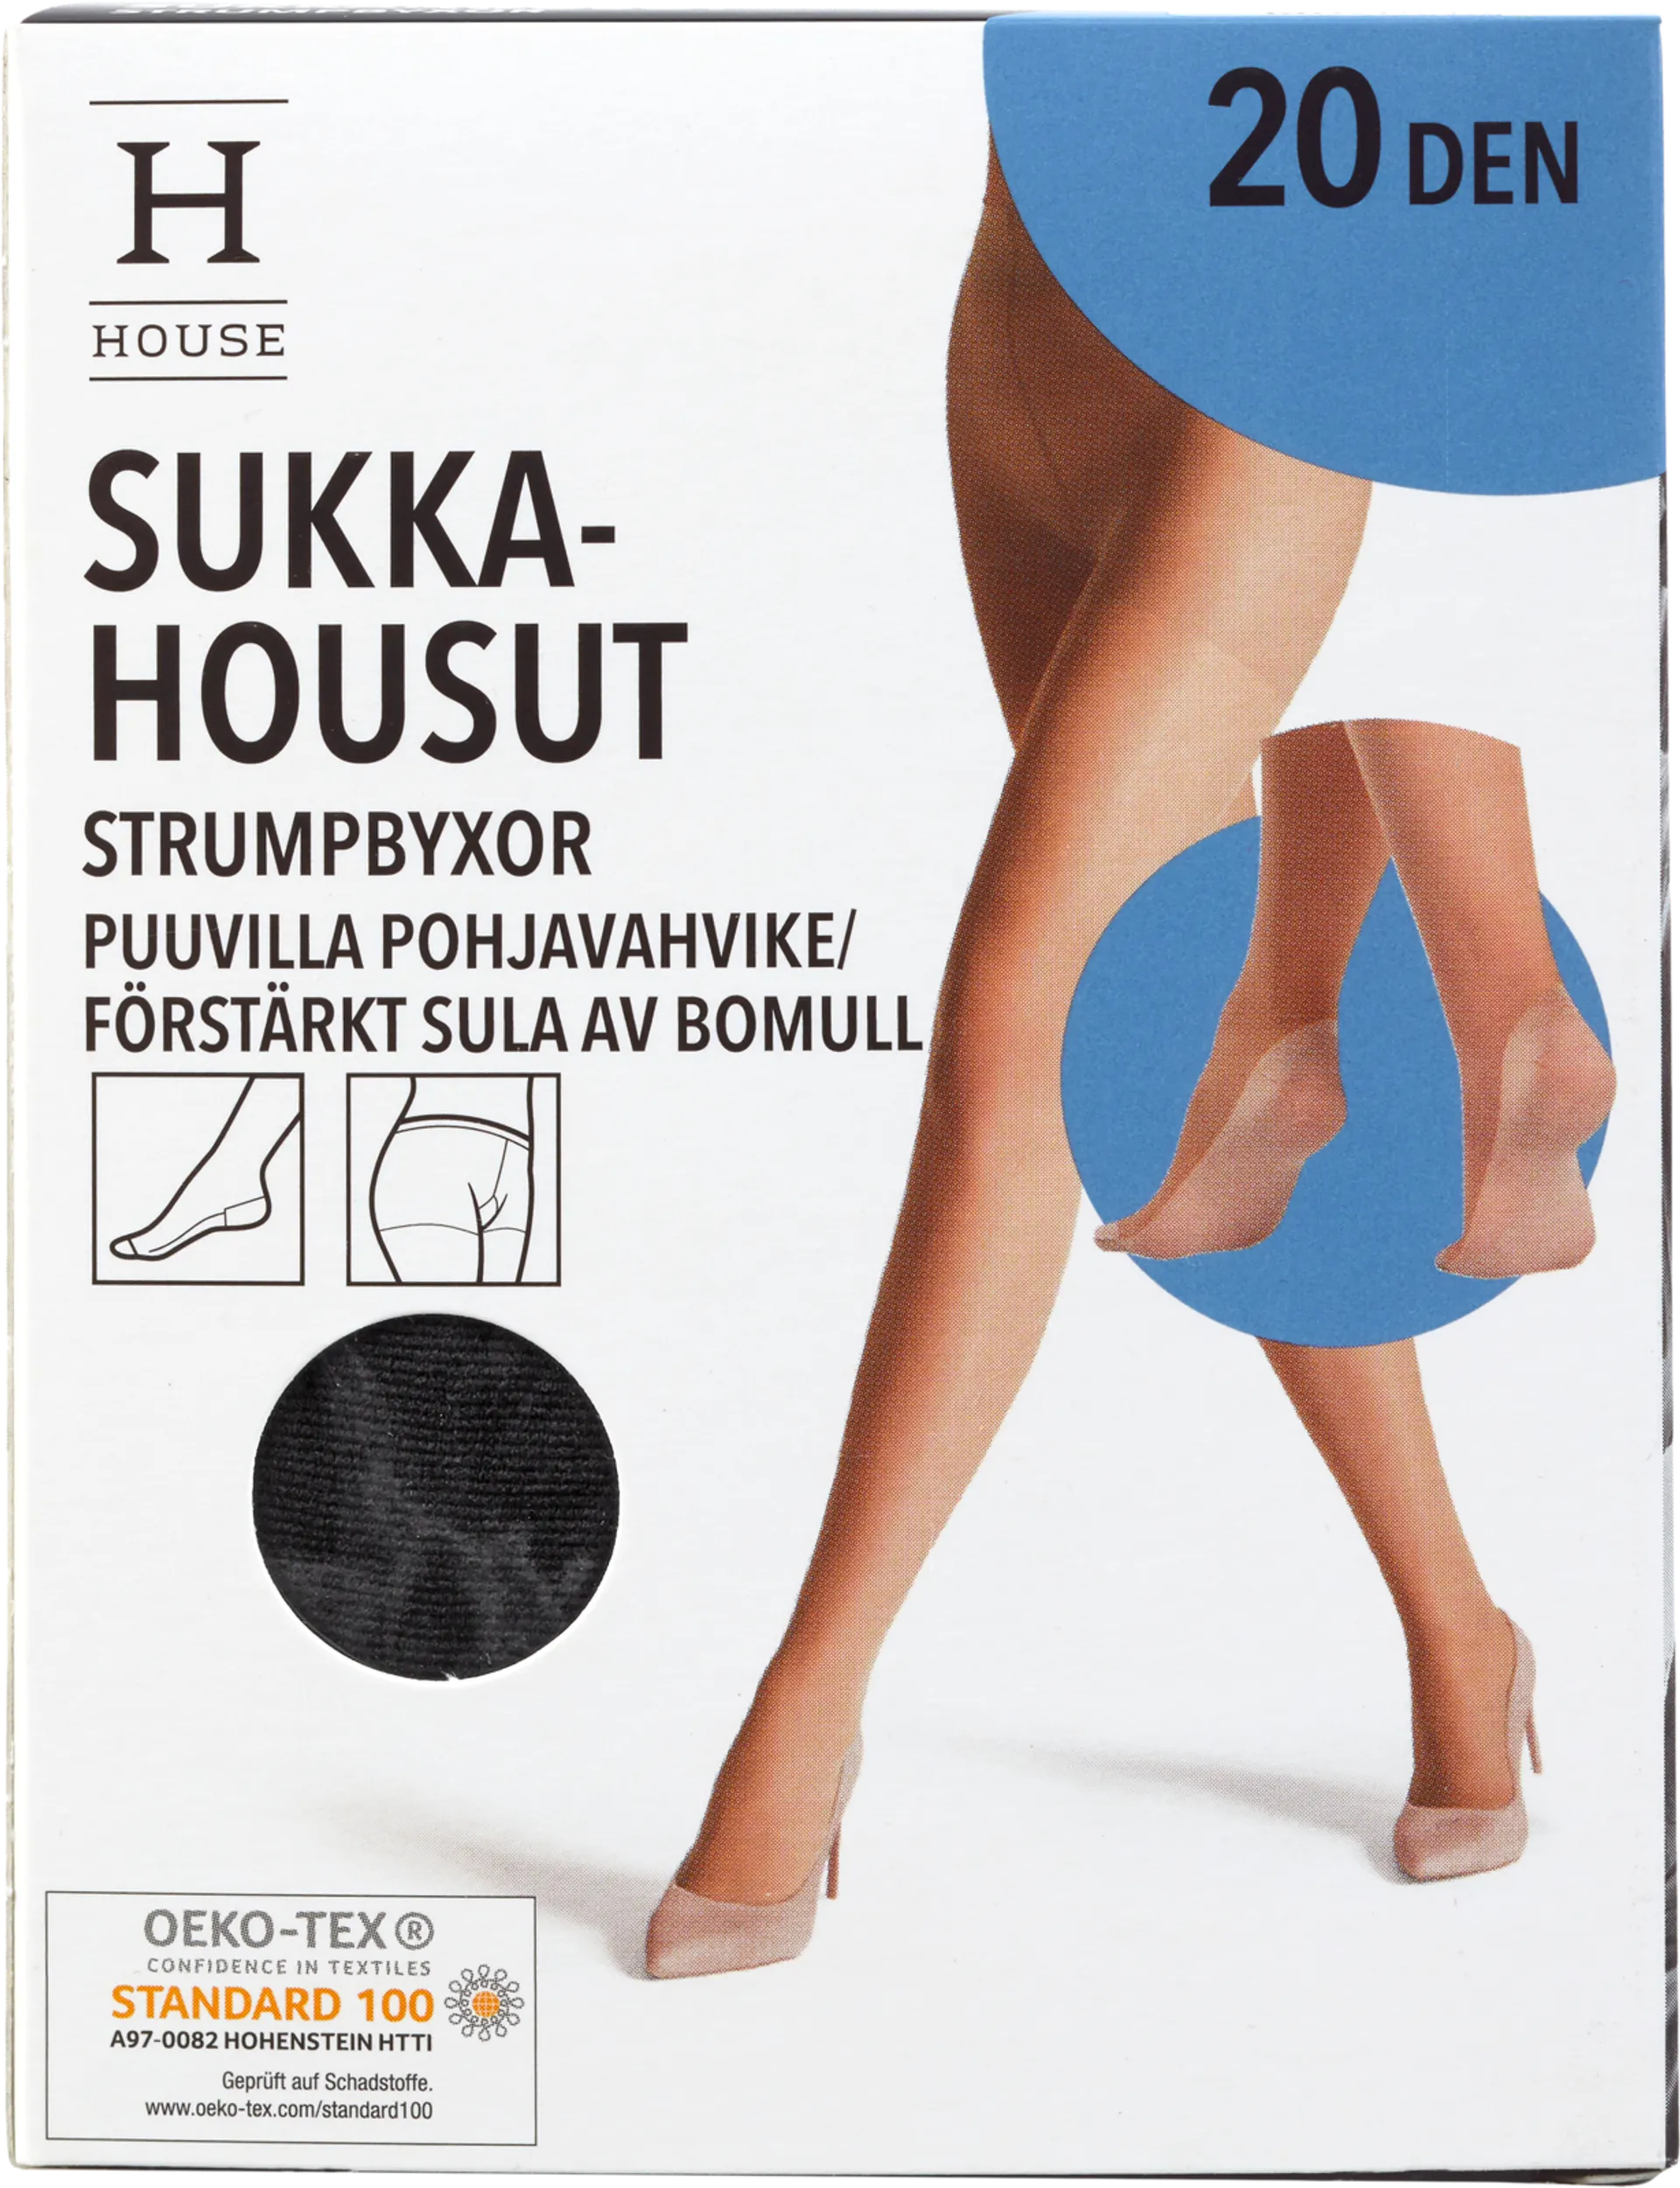 House naisten sukkahousut 20den puuvillapohjavahvike AT4538 - BLACK